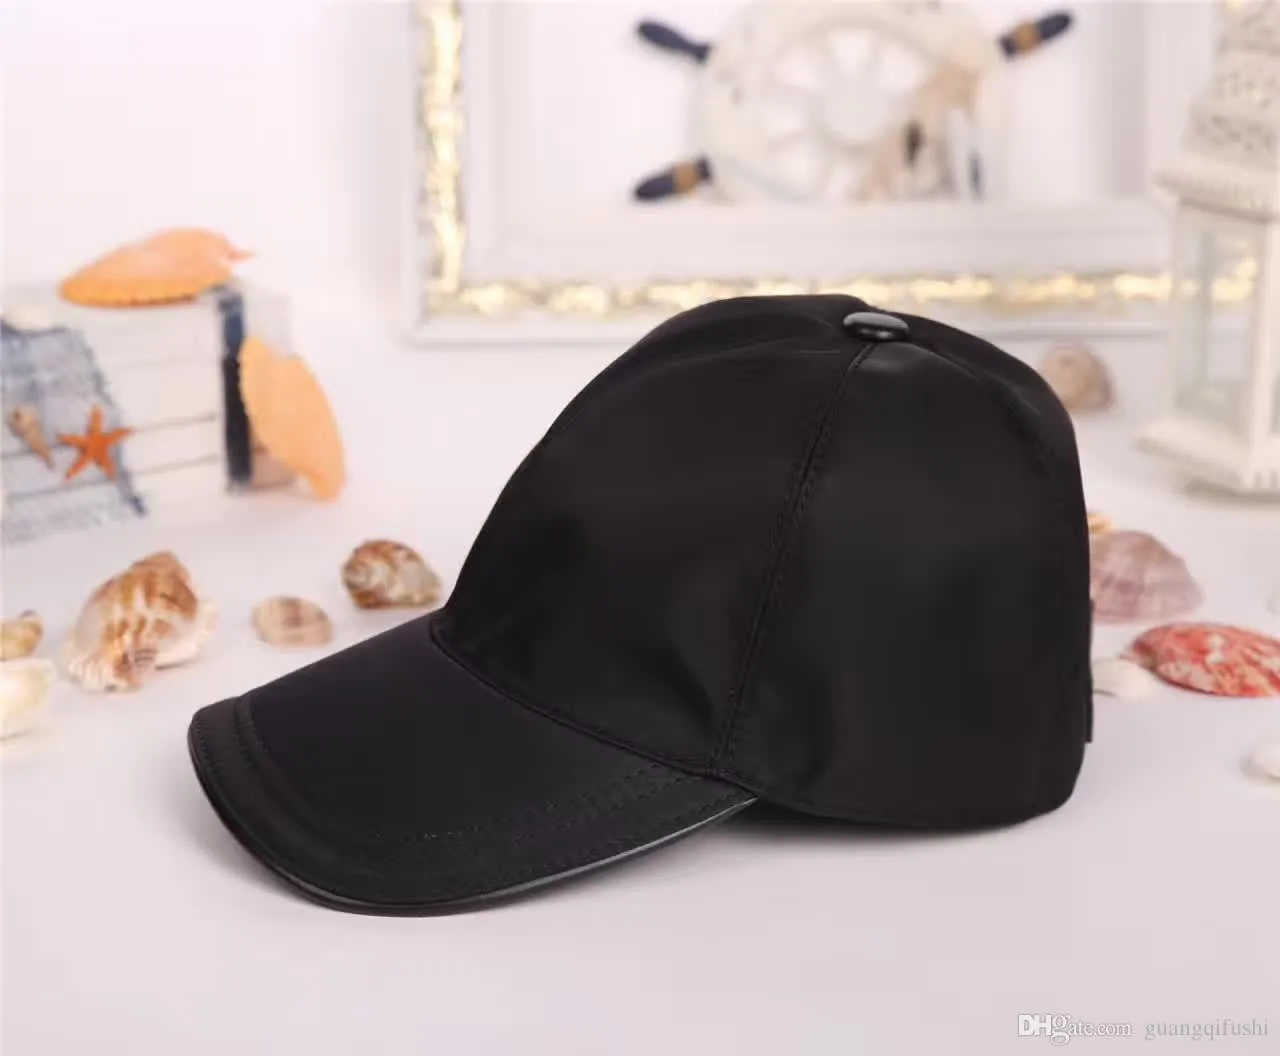 Palla uomini di modo di 2018 cap europee cappelli stile del cappello di Sun di alta qualità quattro colori Berretto da baseball opzionale con scatola